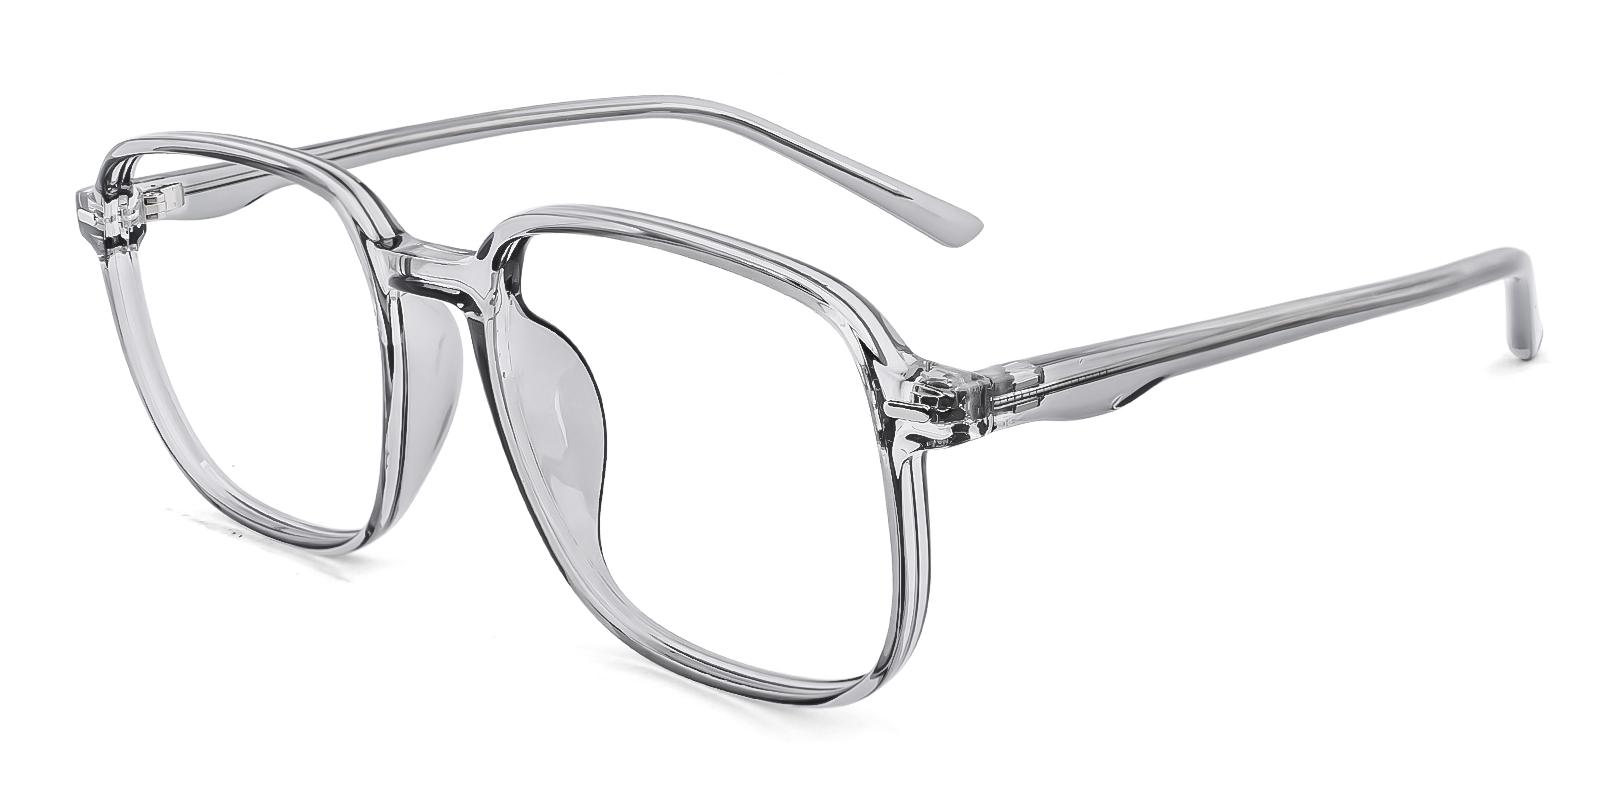 Commonary Gray Plastic Eyeglasses , UniversalBridgeFit Frames from ABBE Glasses